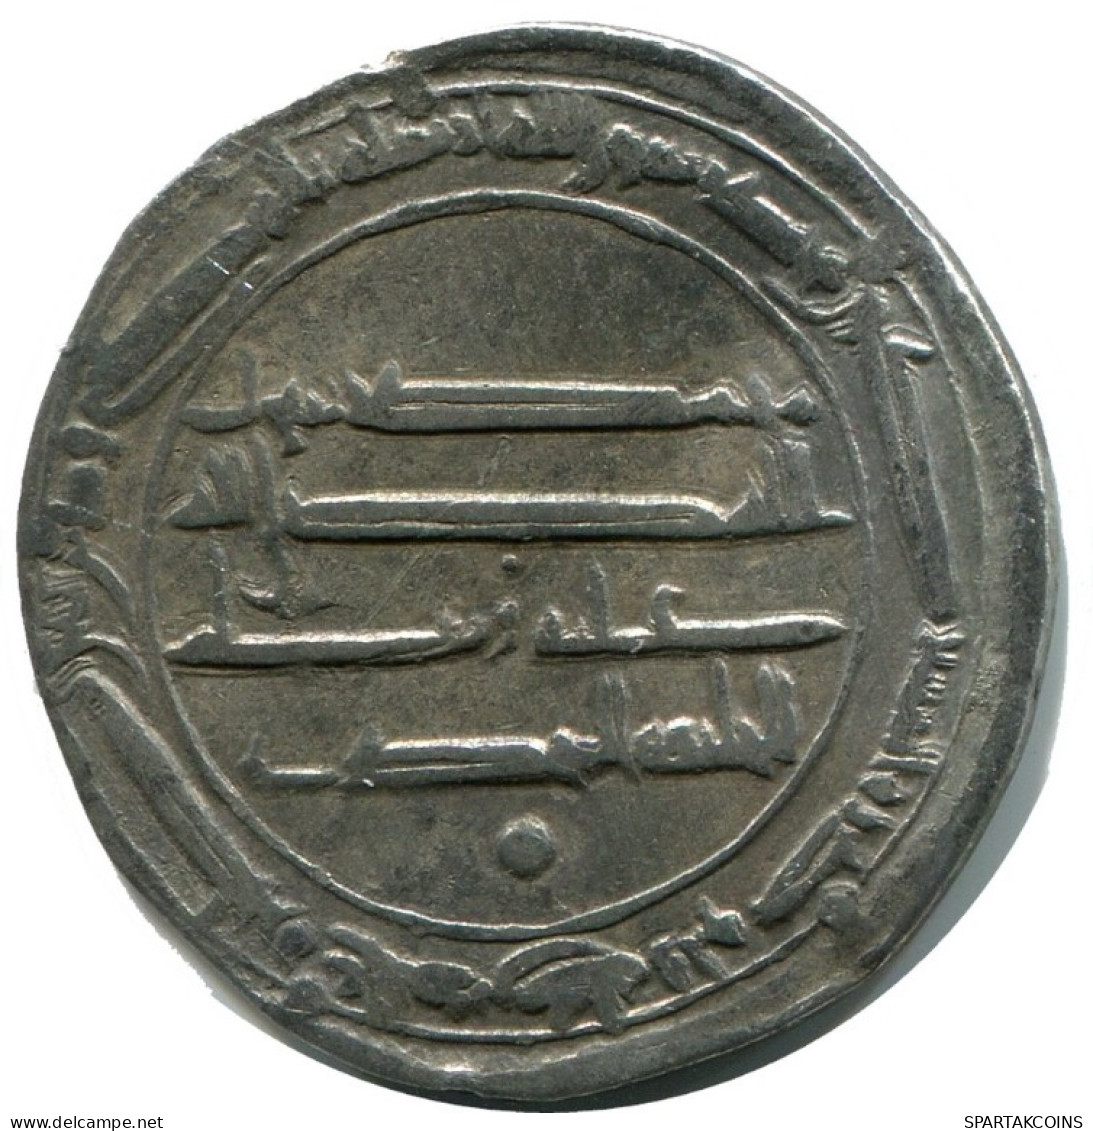 UMAYYAD CALIPHATE Silver DIRHAM Medieval Islamic Coin #AH167.45.U.A - Oosterse Kunst